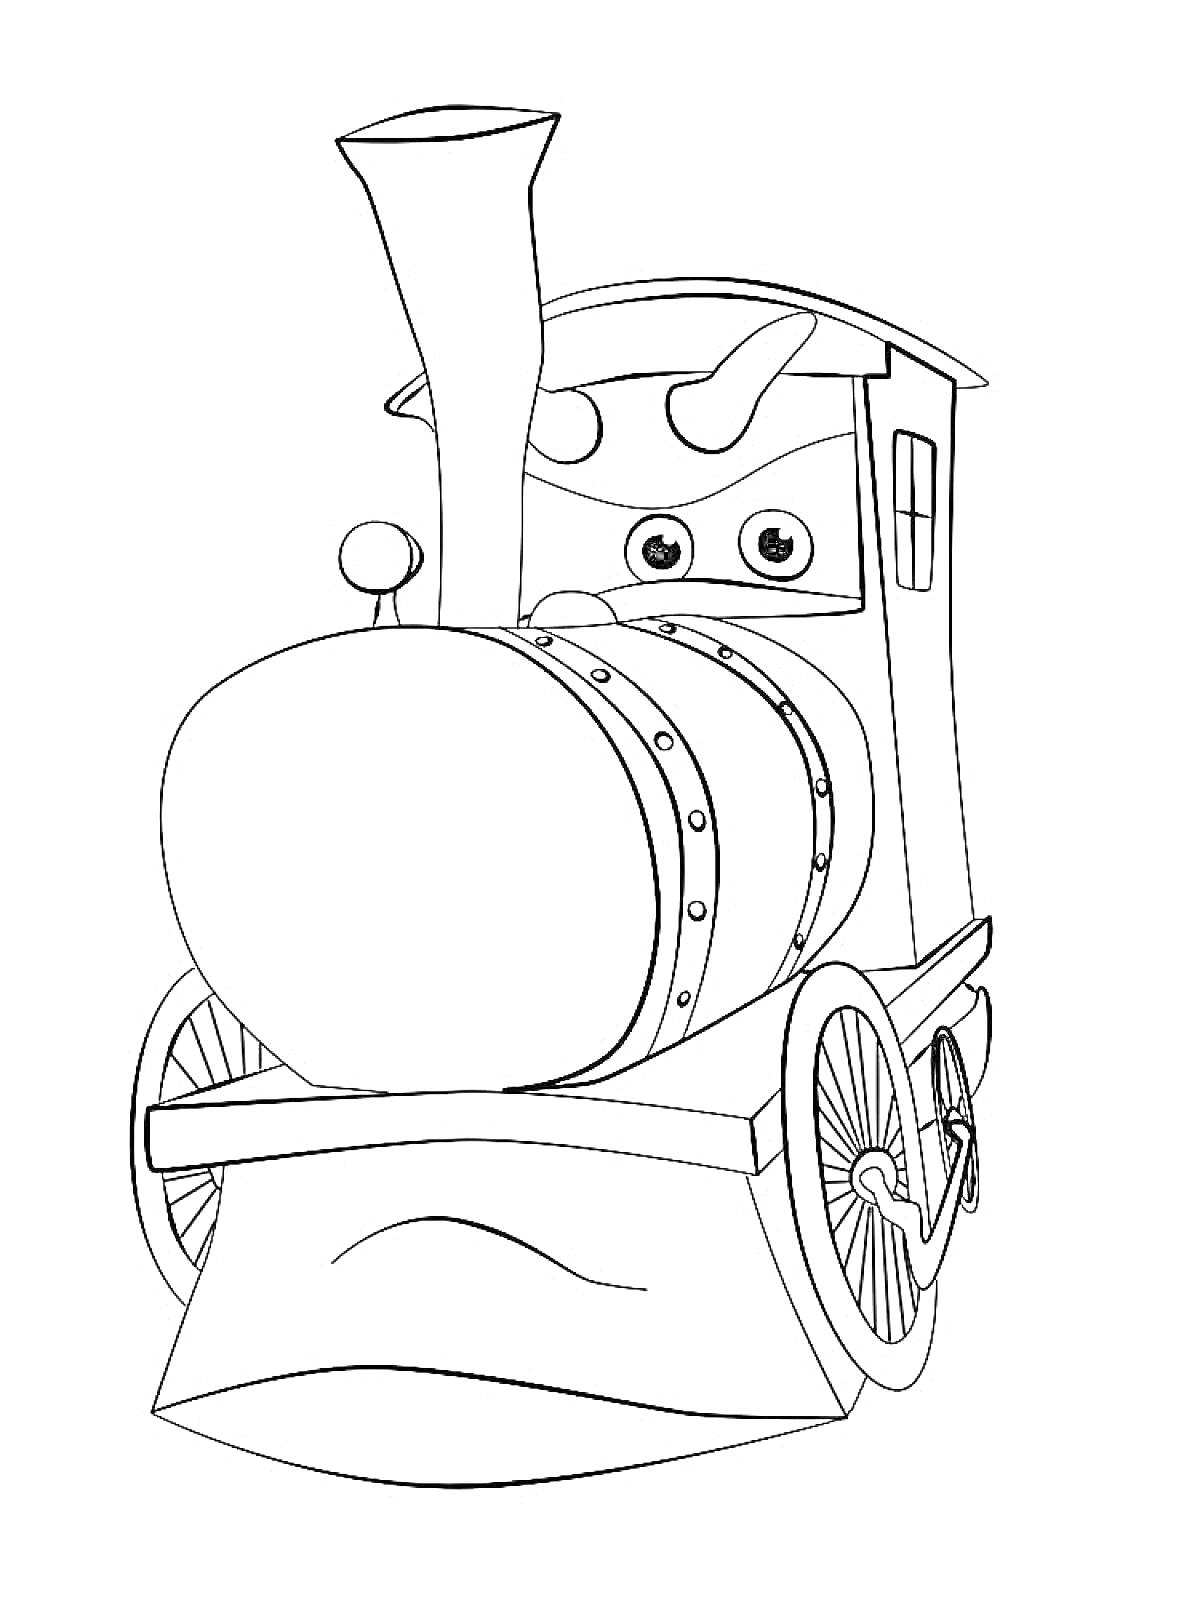 Паровозик Тишка в анфас с дымоходом, колесами и окном